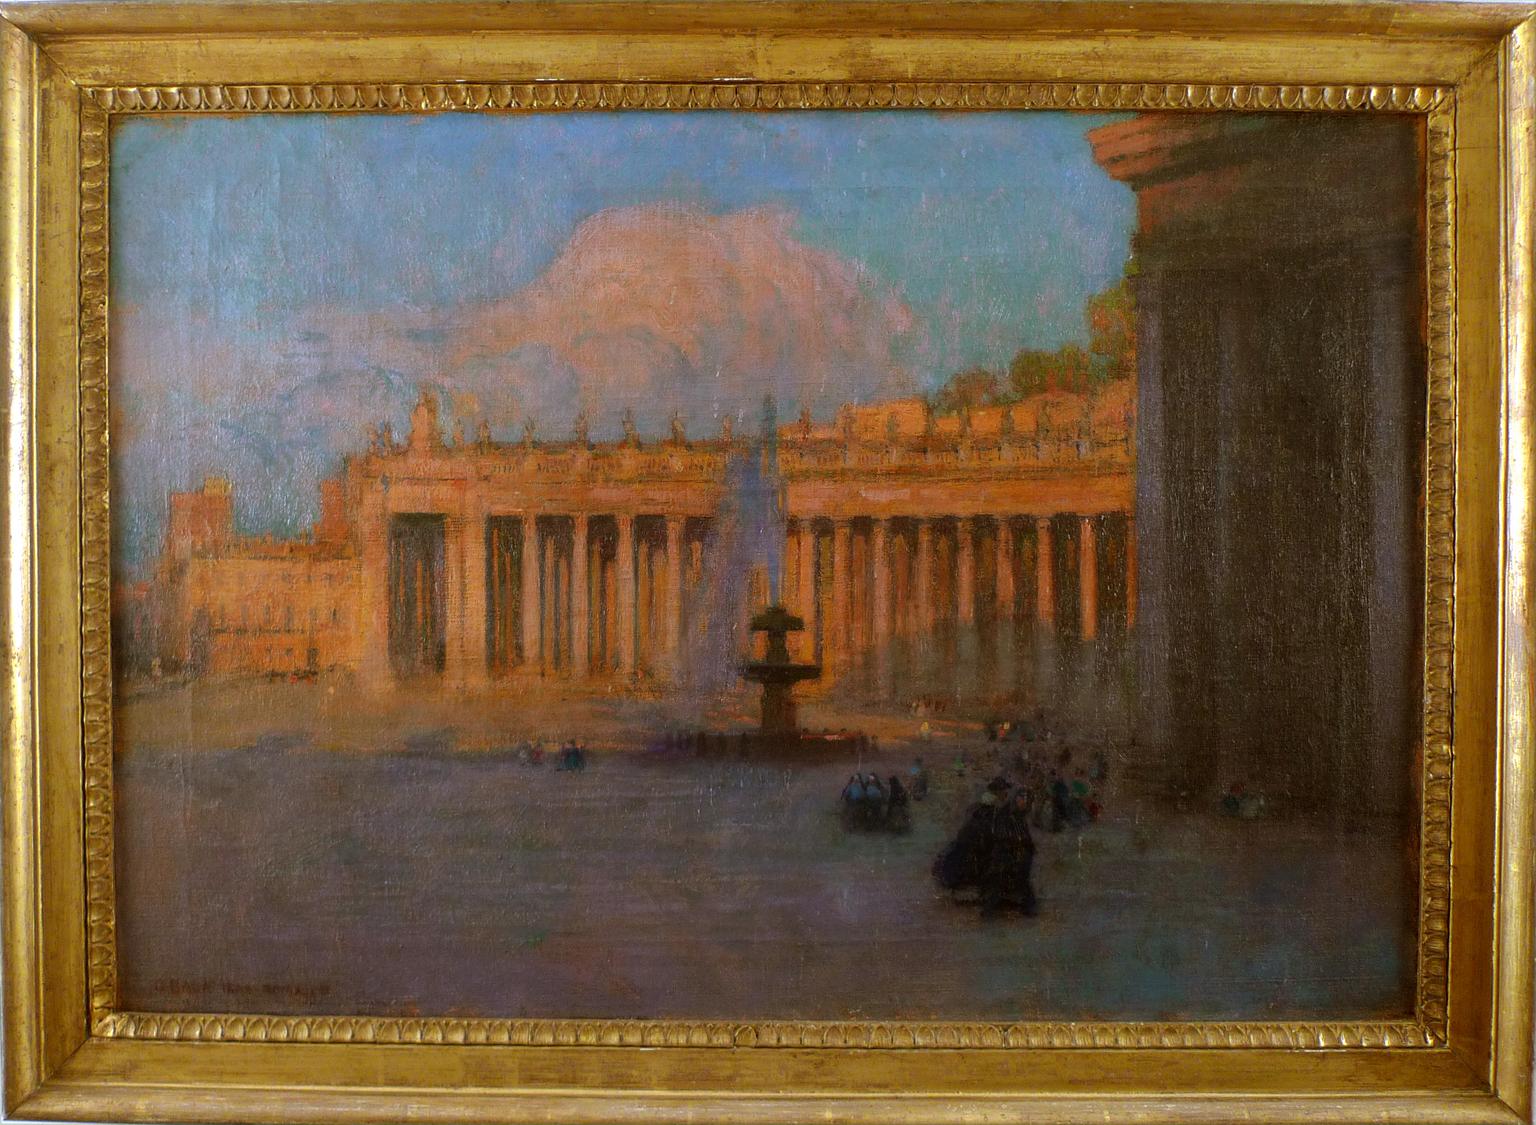 « Saint Peter's Square, Rome », huile sur toile du XIXe siècle de Gustavo Bacarisas